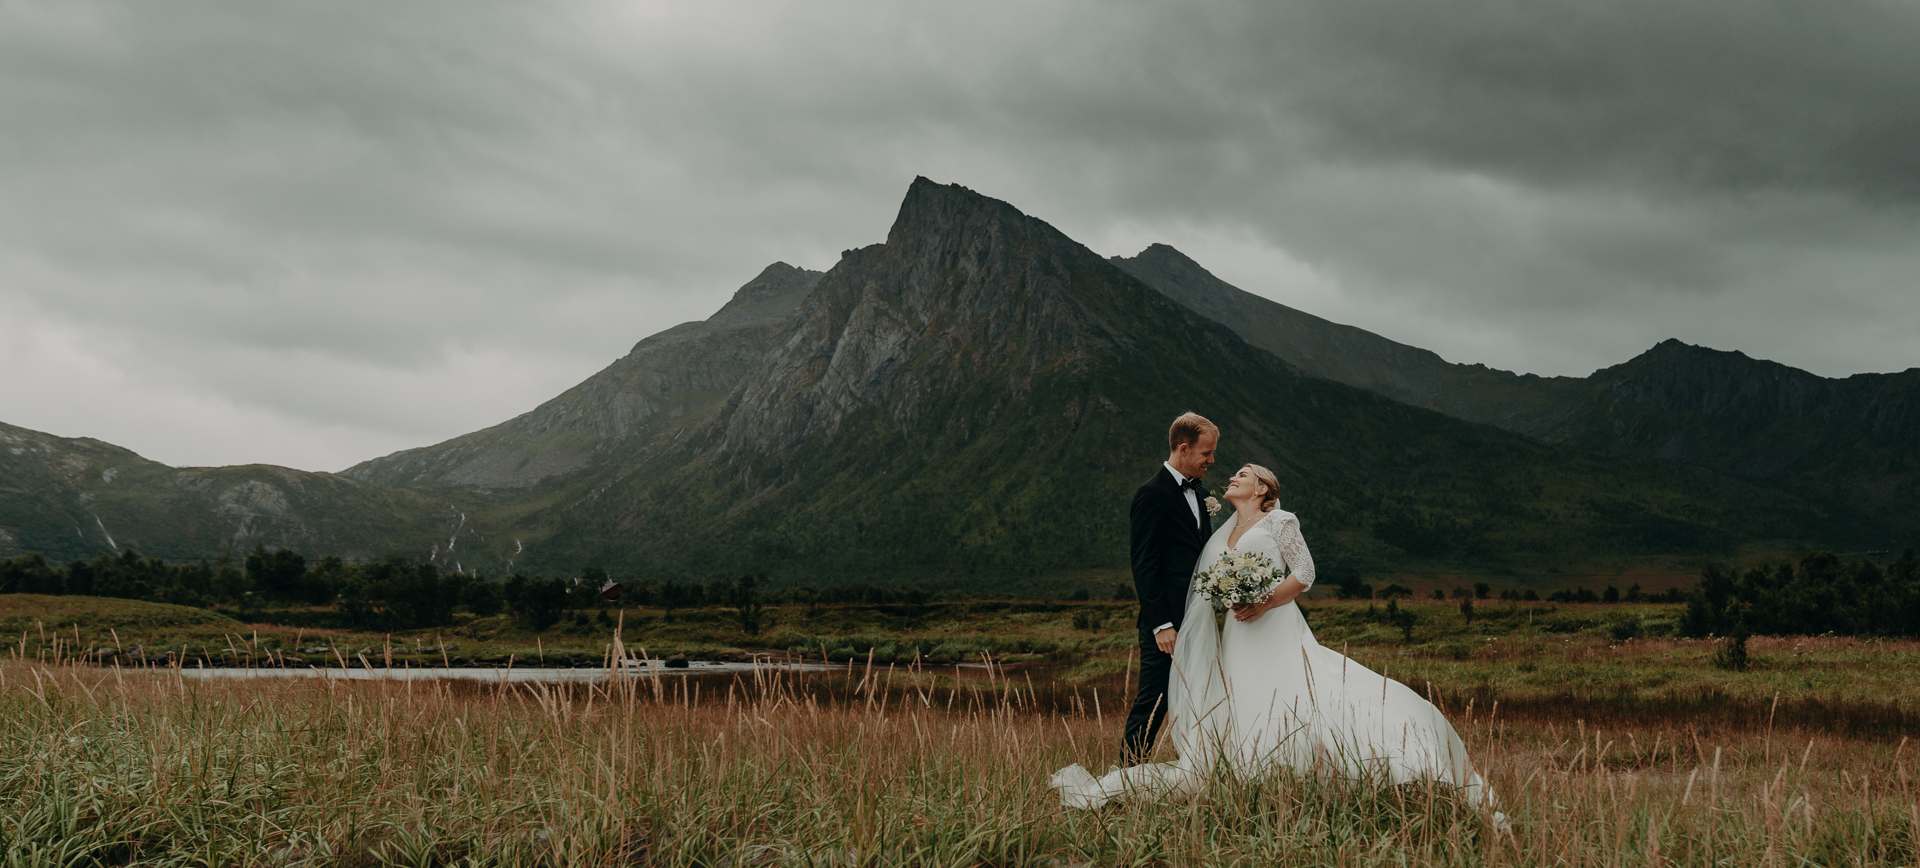 fairytale wedding in the arctic - elopement in norway